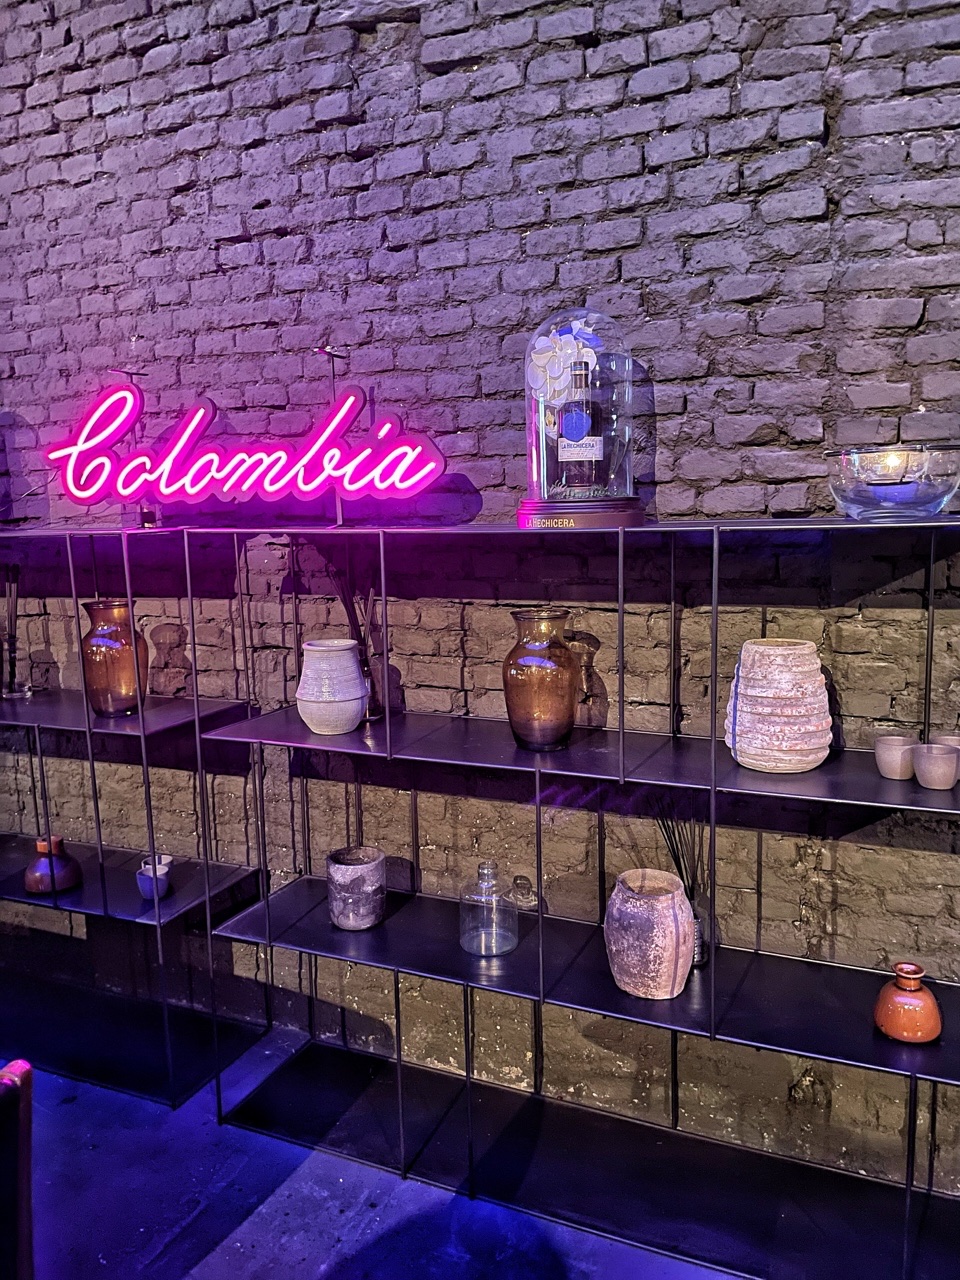 La Hechicera: il rum autentico di Colombia